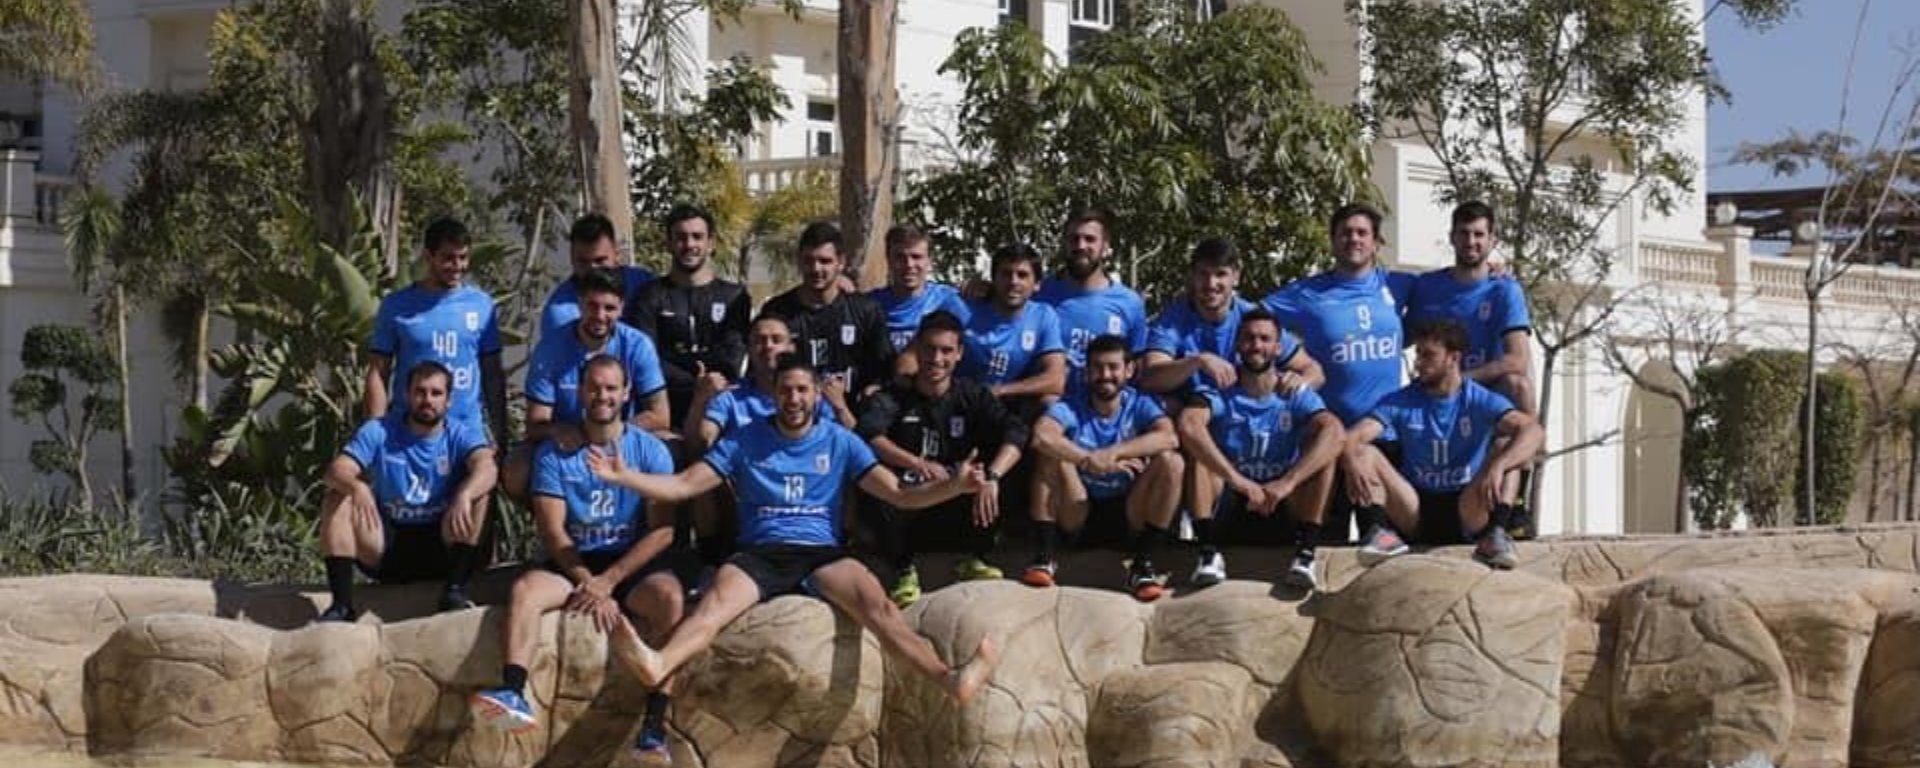 Facundo Liston formó parte de la selección de Uruguay de handball en el mundial Egipto 2021